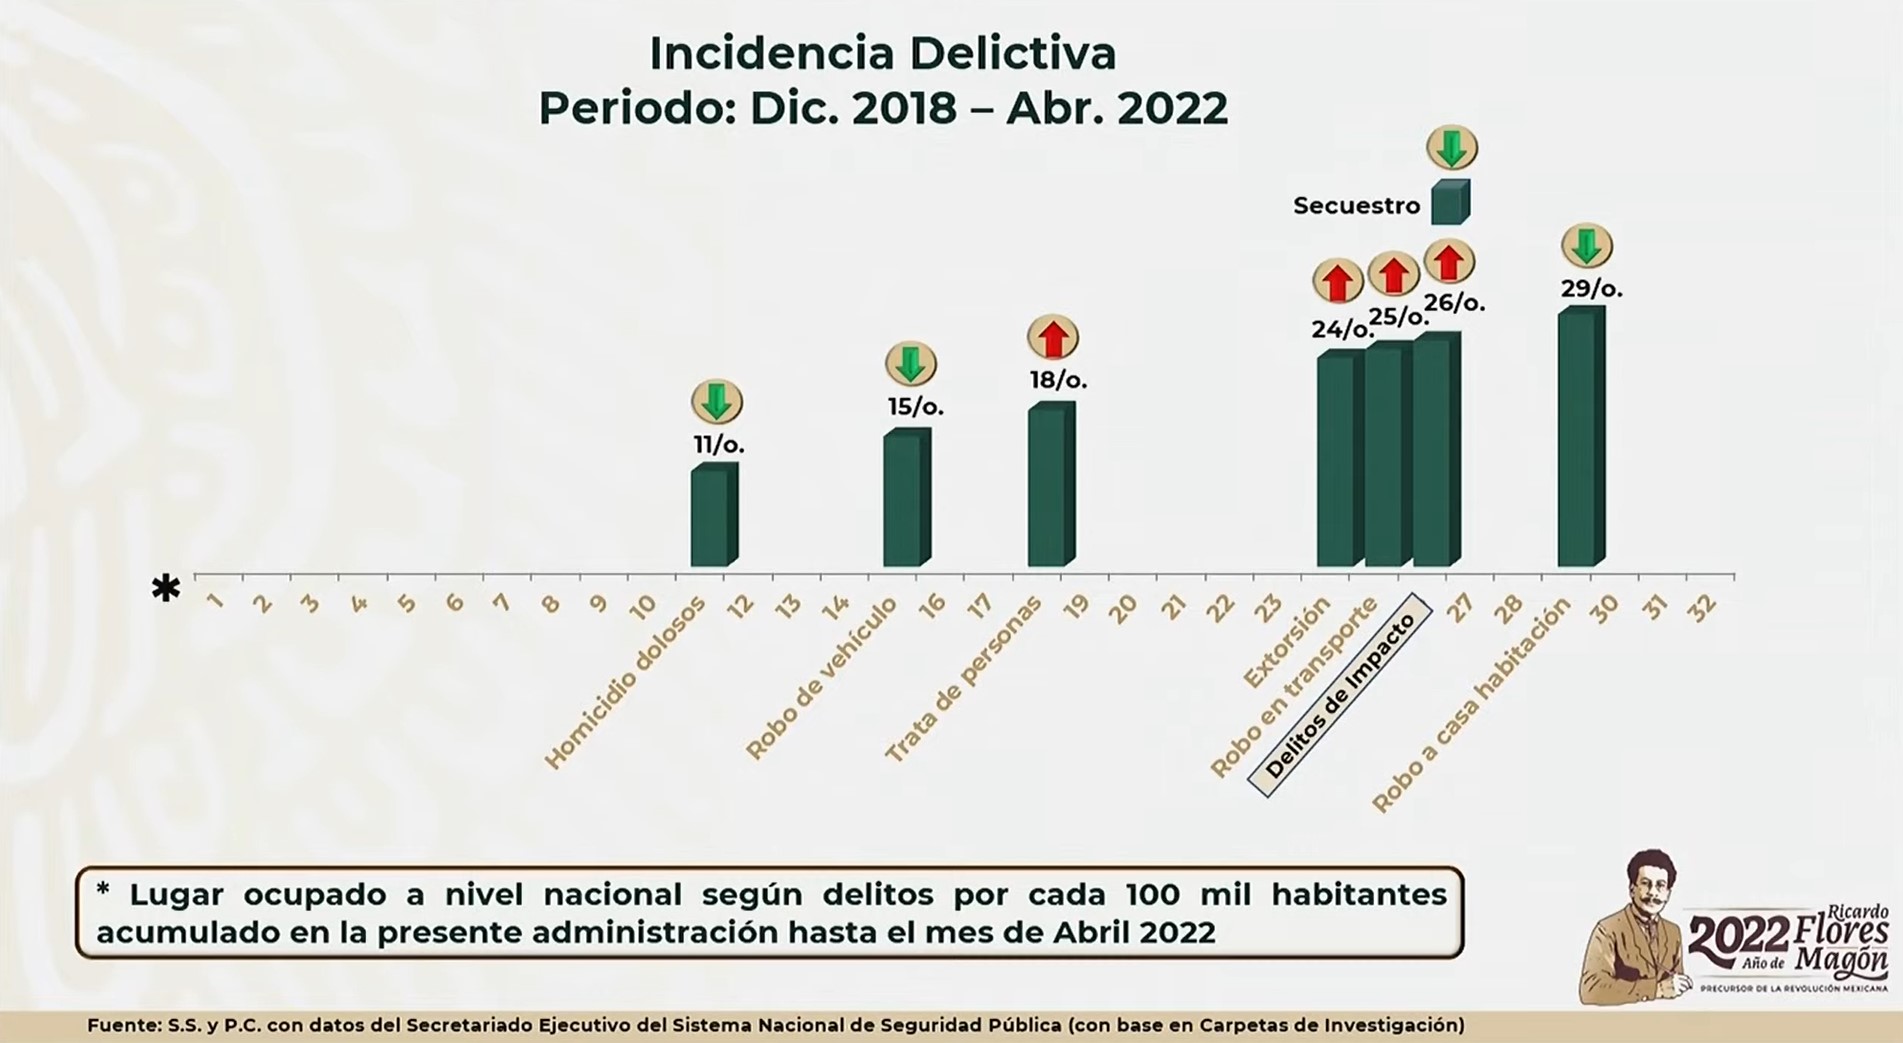 Incidencia delictiva en Sinaloa de diciembre de 2018 a abril de 2022. Foto: Gobierno de México